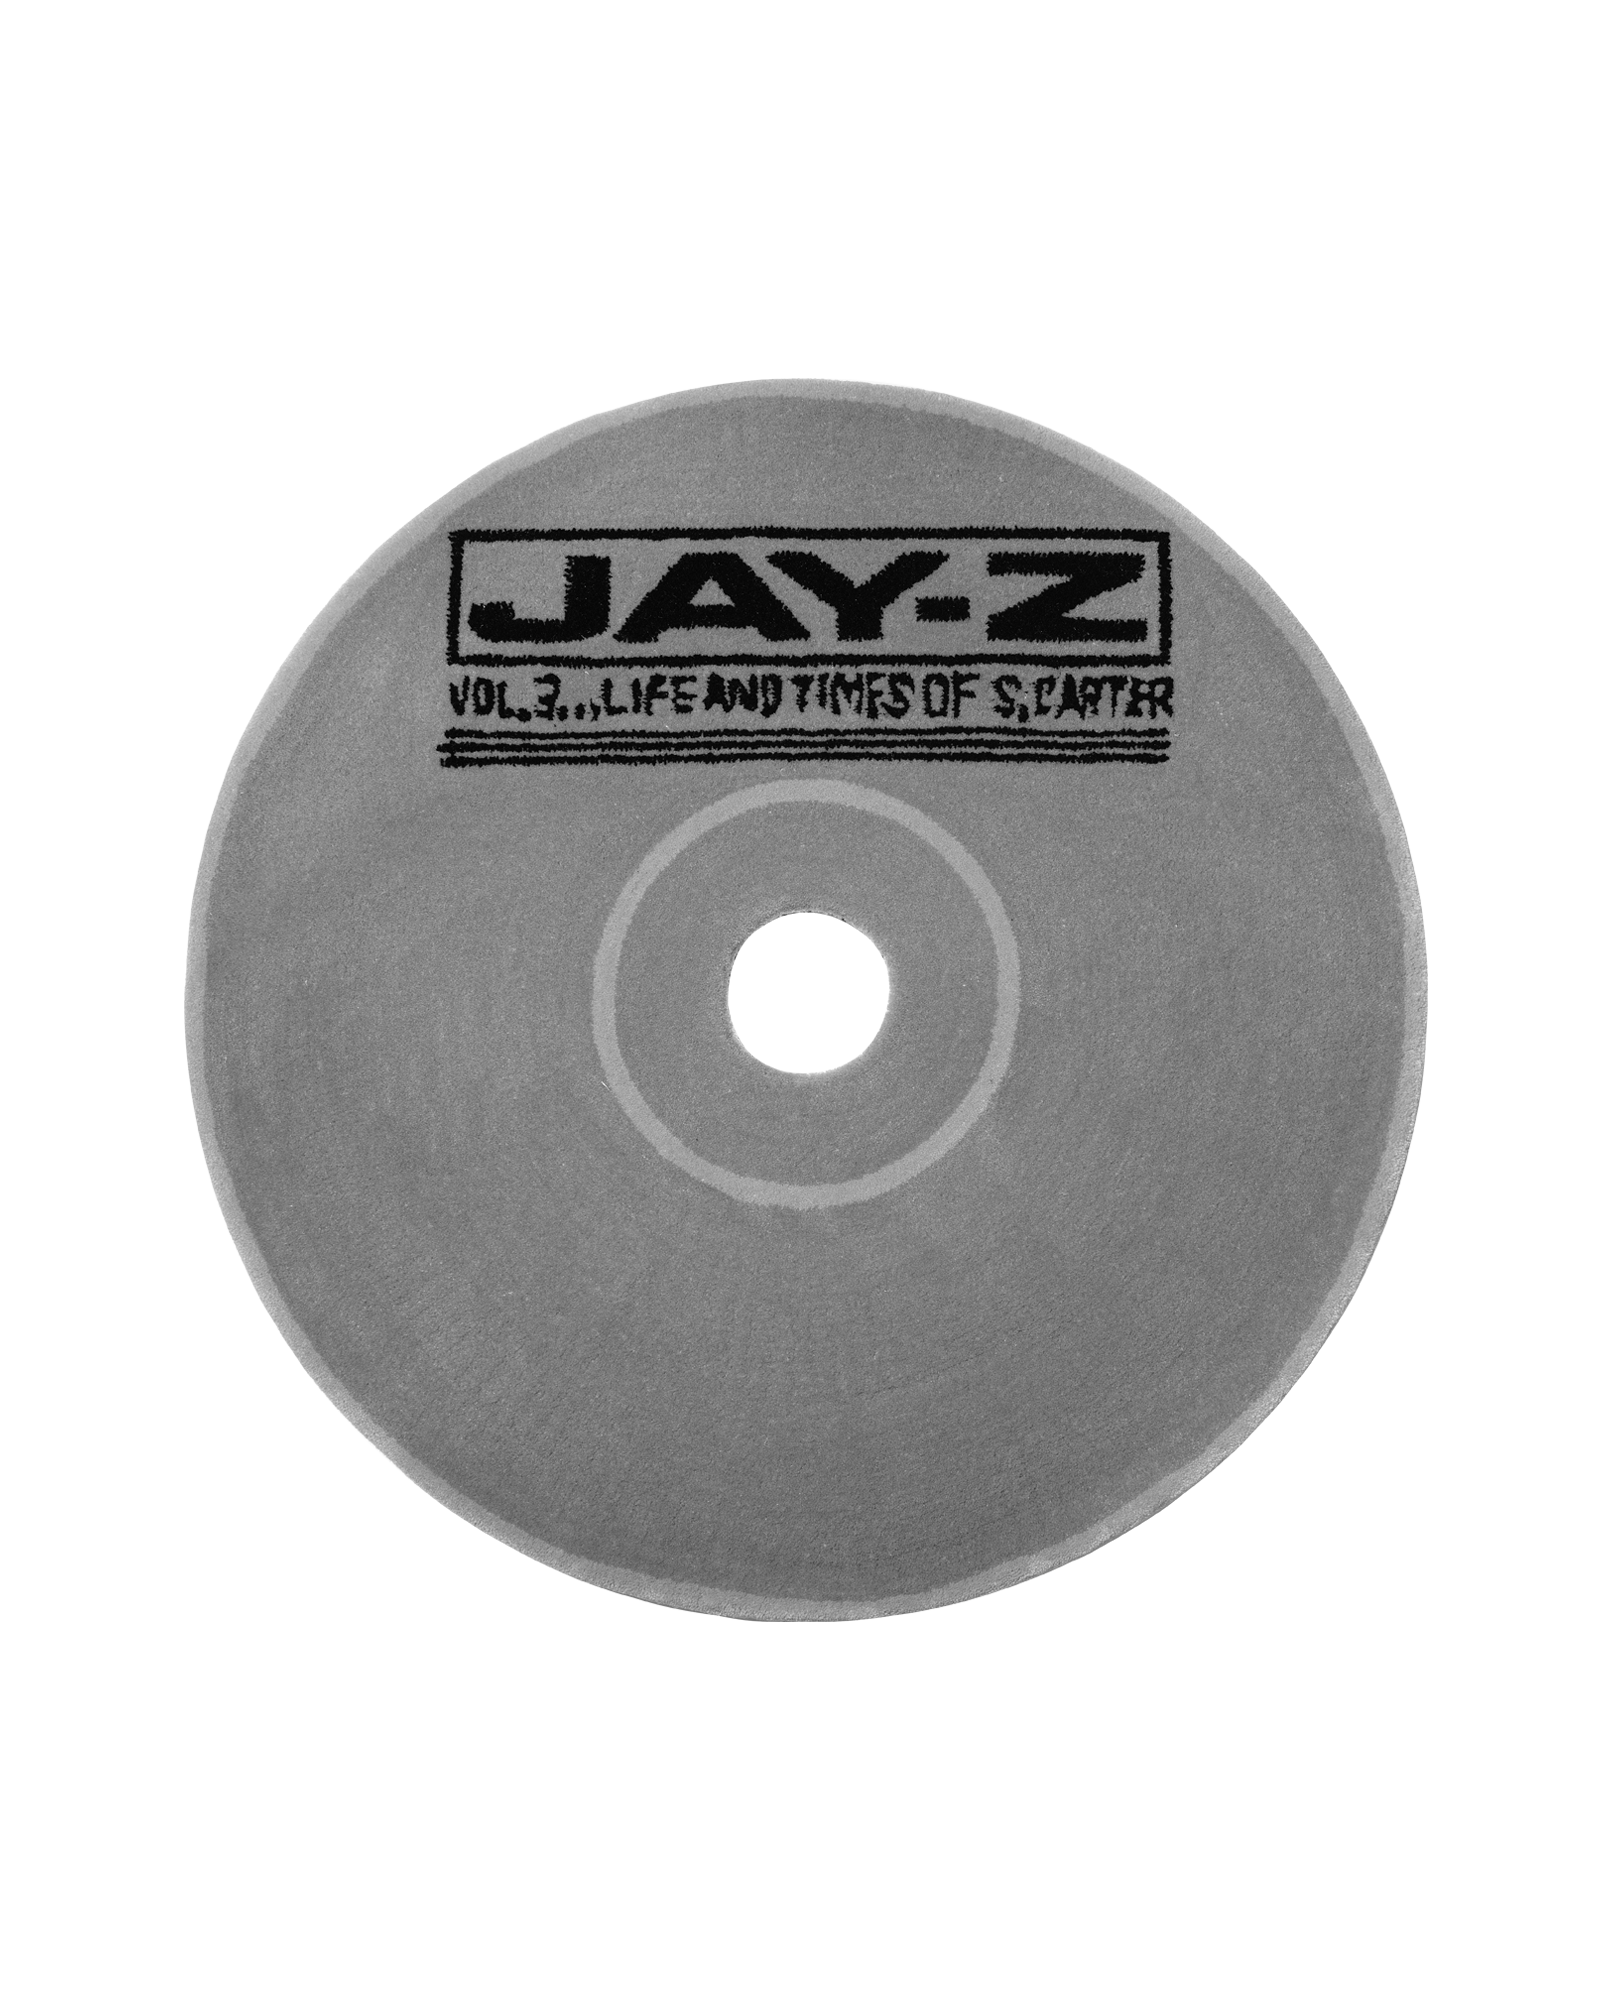 Handmade CD Rug (Jay-Z / Vol. 3)